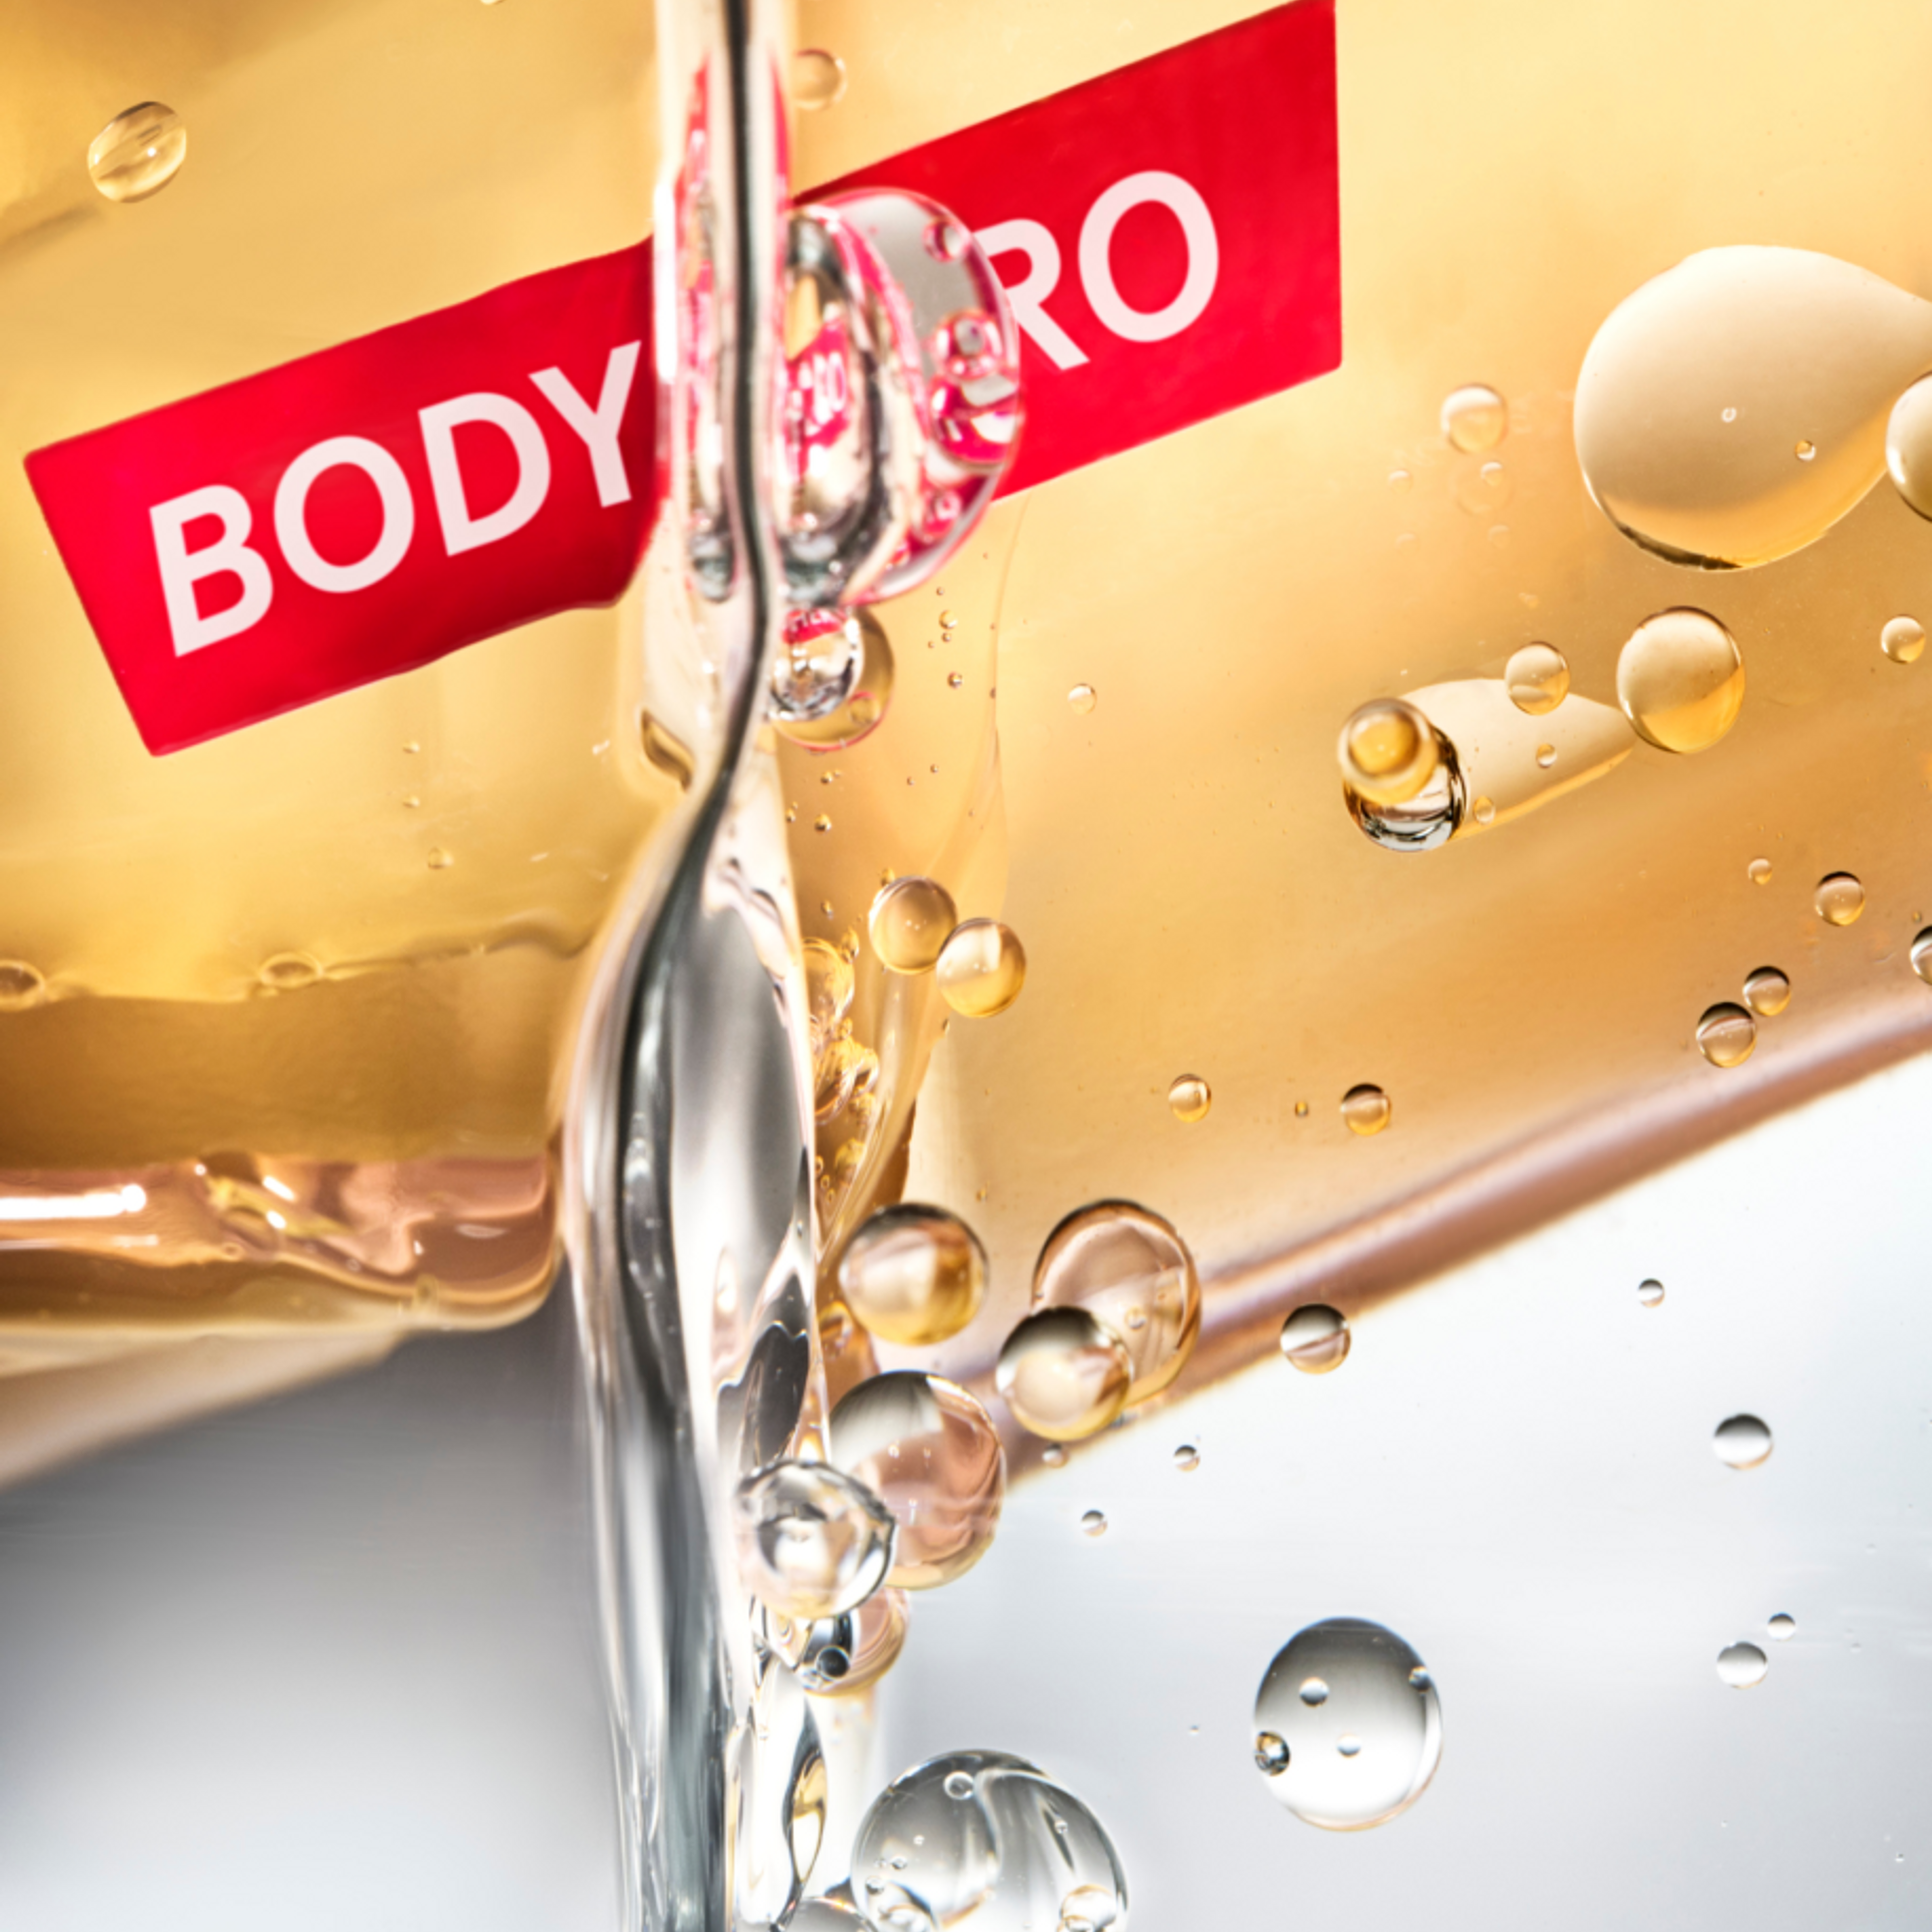 Body Hero Dry-Touch Oil Mist